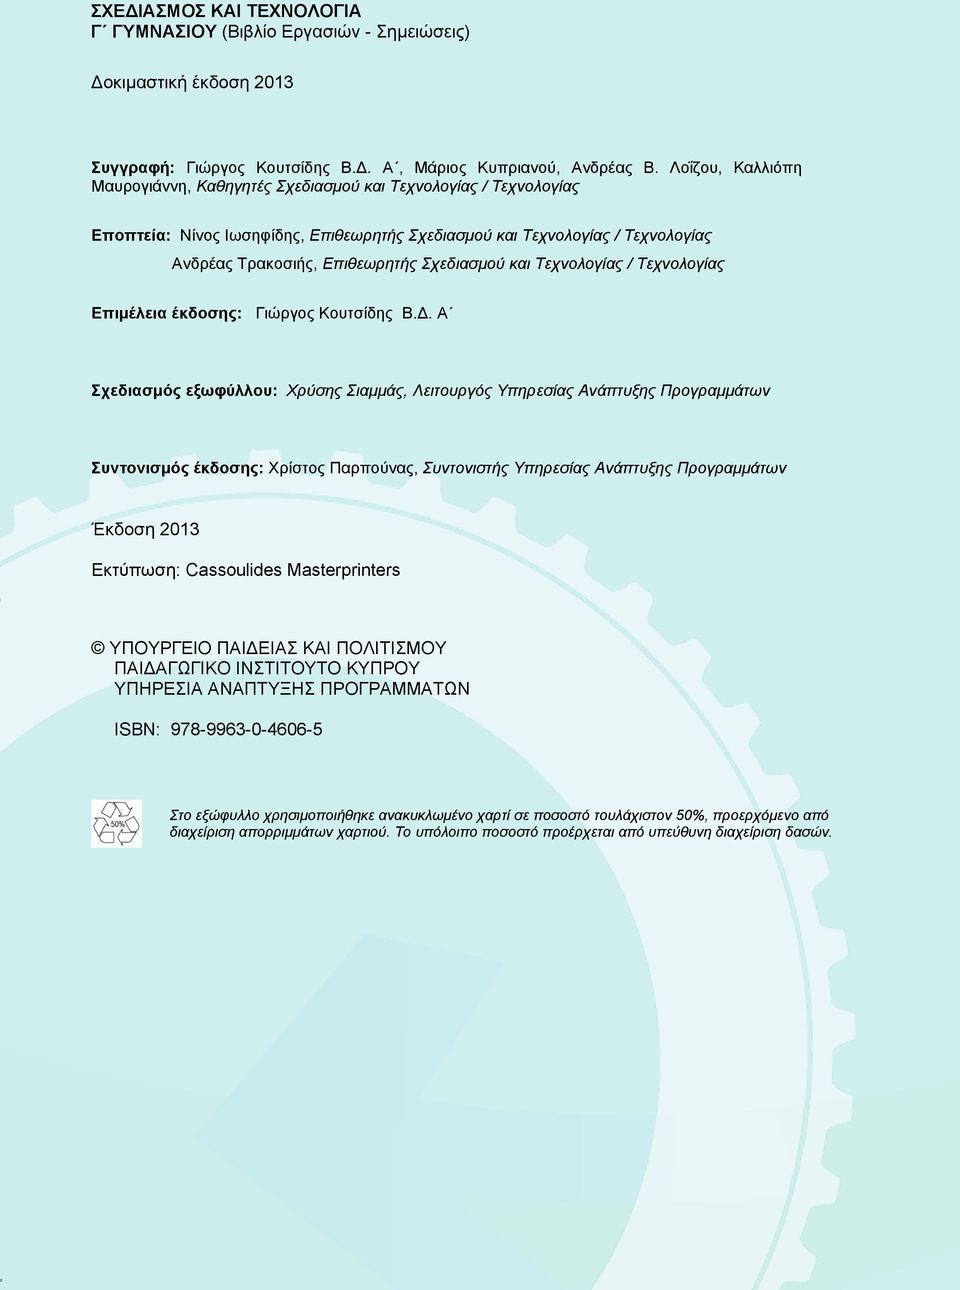 Σχεδιασμού και Τεχνολογίας / Τεχνολογίας Επιμέλεια έκδοσης: Γιώργος Κουτσίδης Β.Δ.